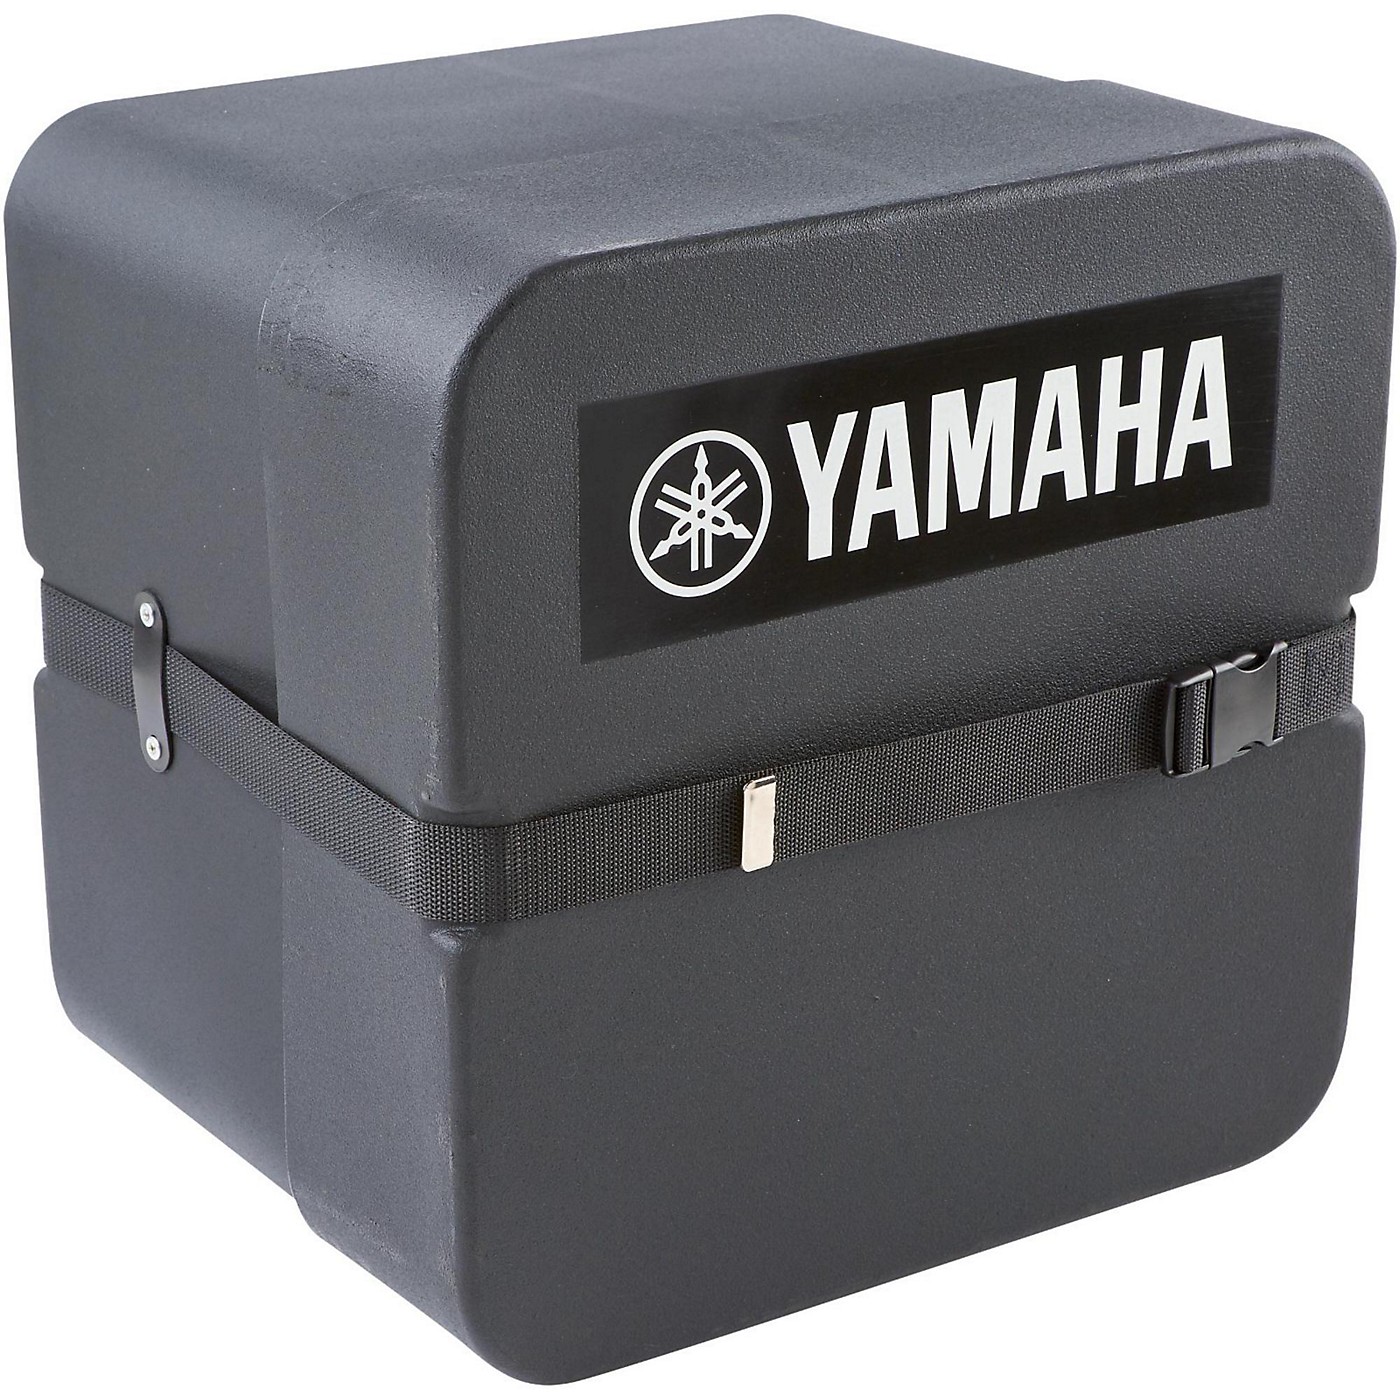 Yamaha 14x12